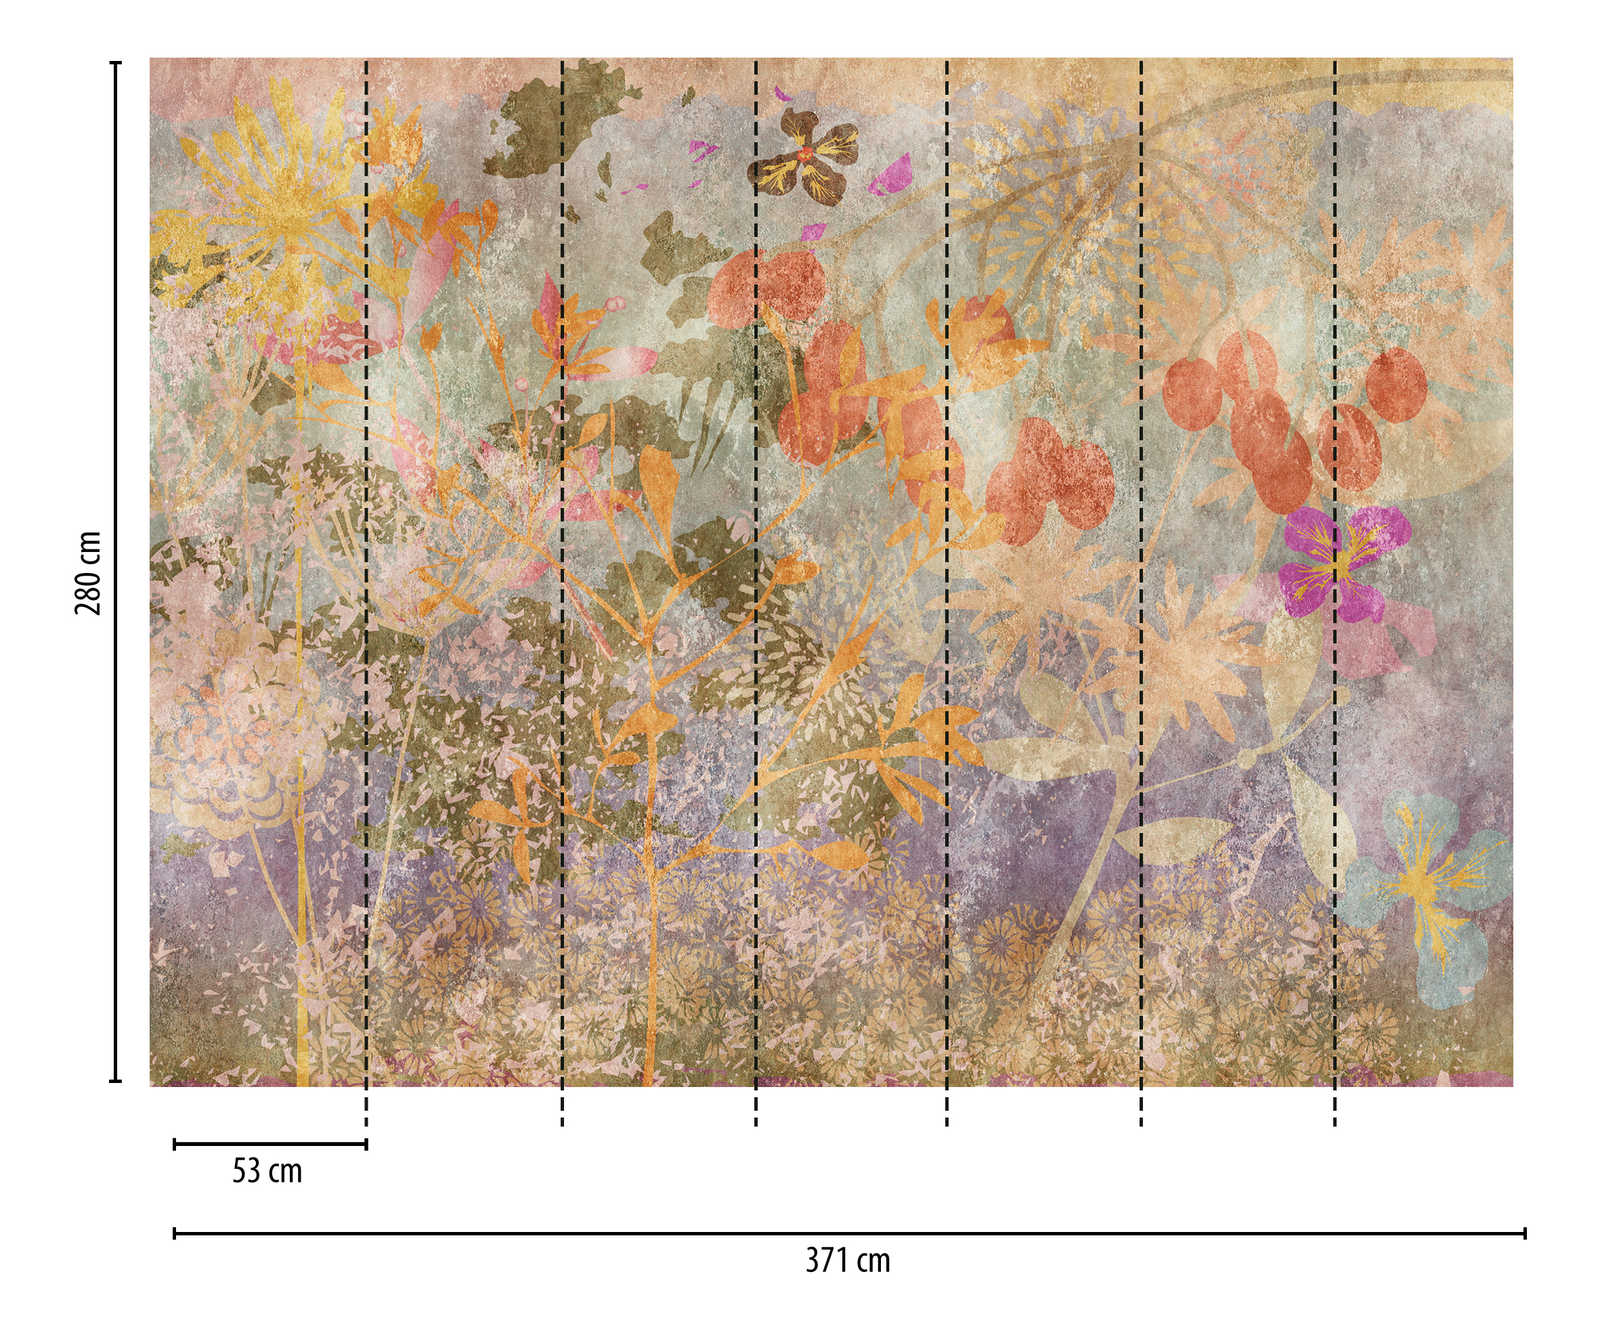             Wallpaper novelty - motif wallpaper flowers fresco in retro style
        